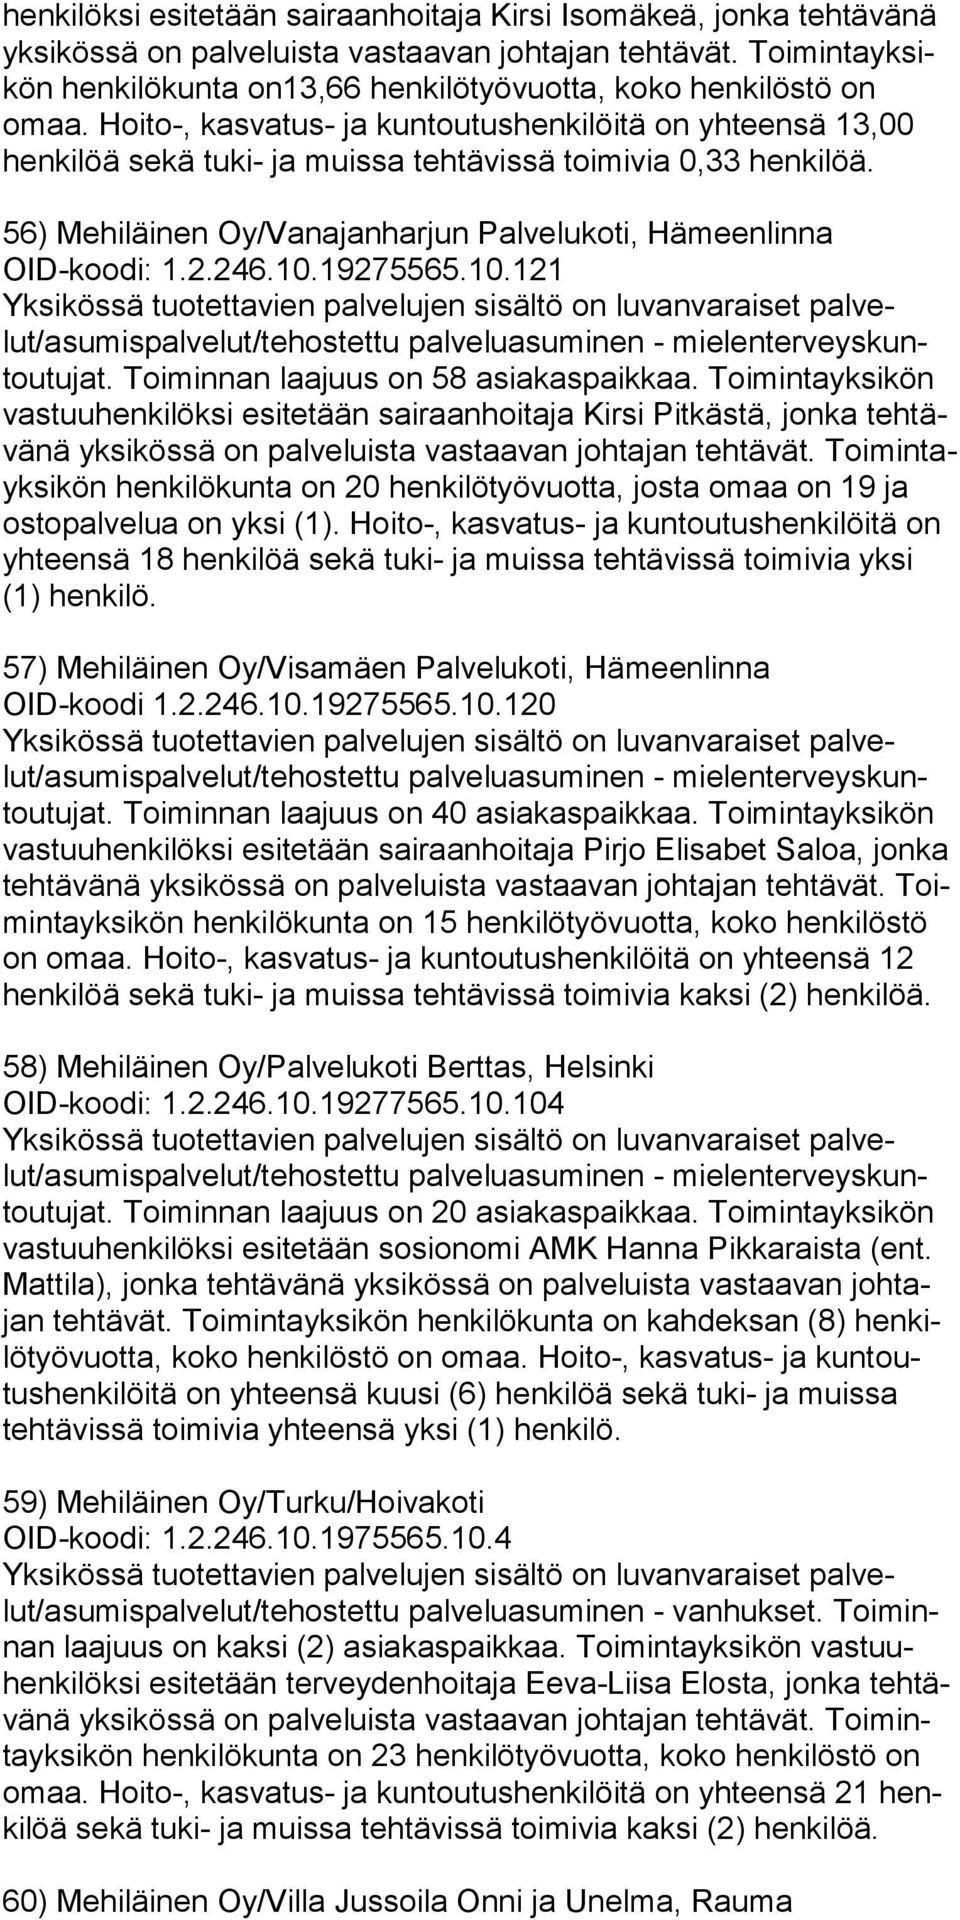 Hoito-, kasvatus- ja kuntoutushenkilöitä on yhteensä 13,00 henkilöä sekä tuki- ja muissa tehtävissä toimivia 0,33 henkilöä. 56) Mehiläinen Oy/Vanajanharjun Palvelukoti, Hämeenlinna OID-koodi: 1.2.246.